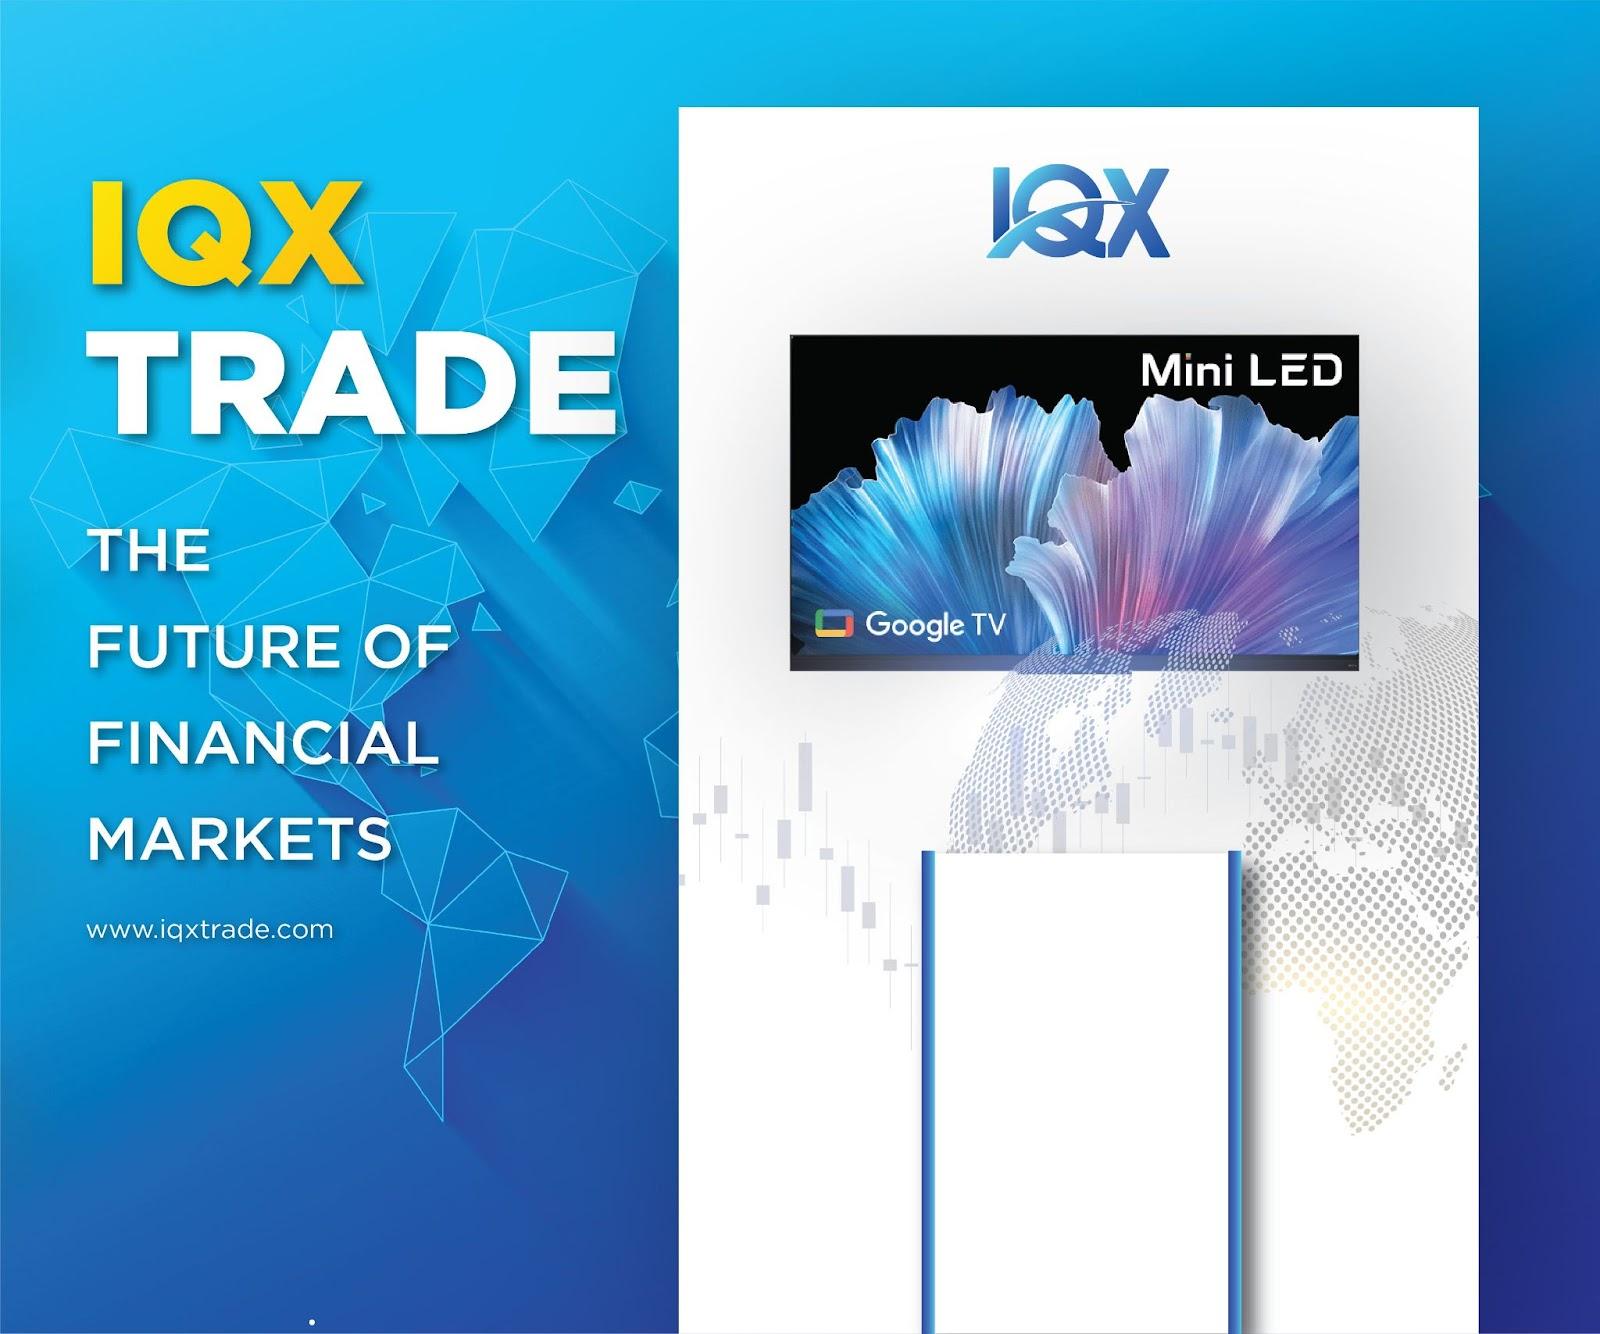 IQX Trade đồng hành tổ chức Ngày hội đầu tư cùng Info Finance 